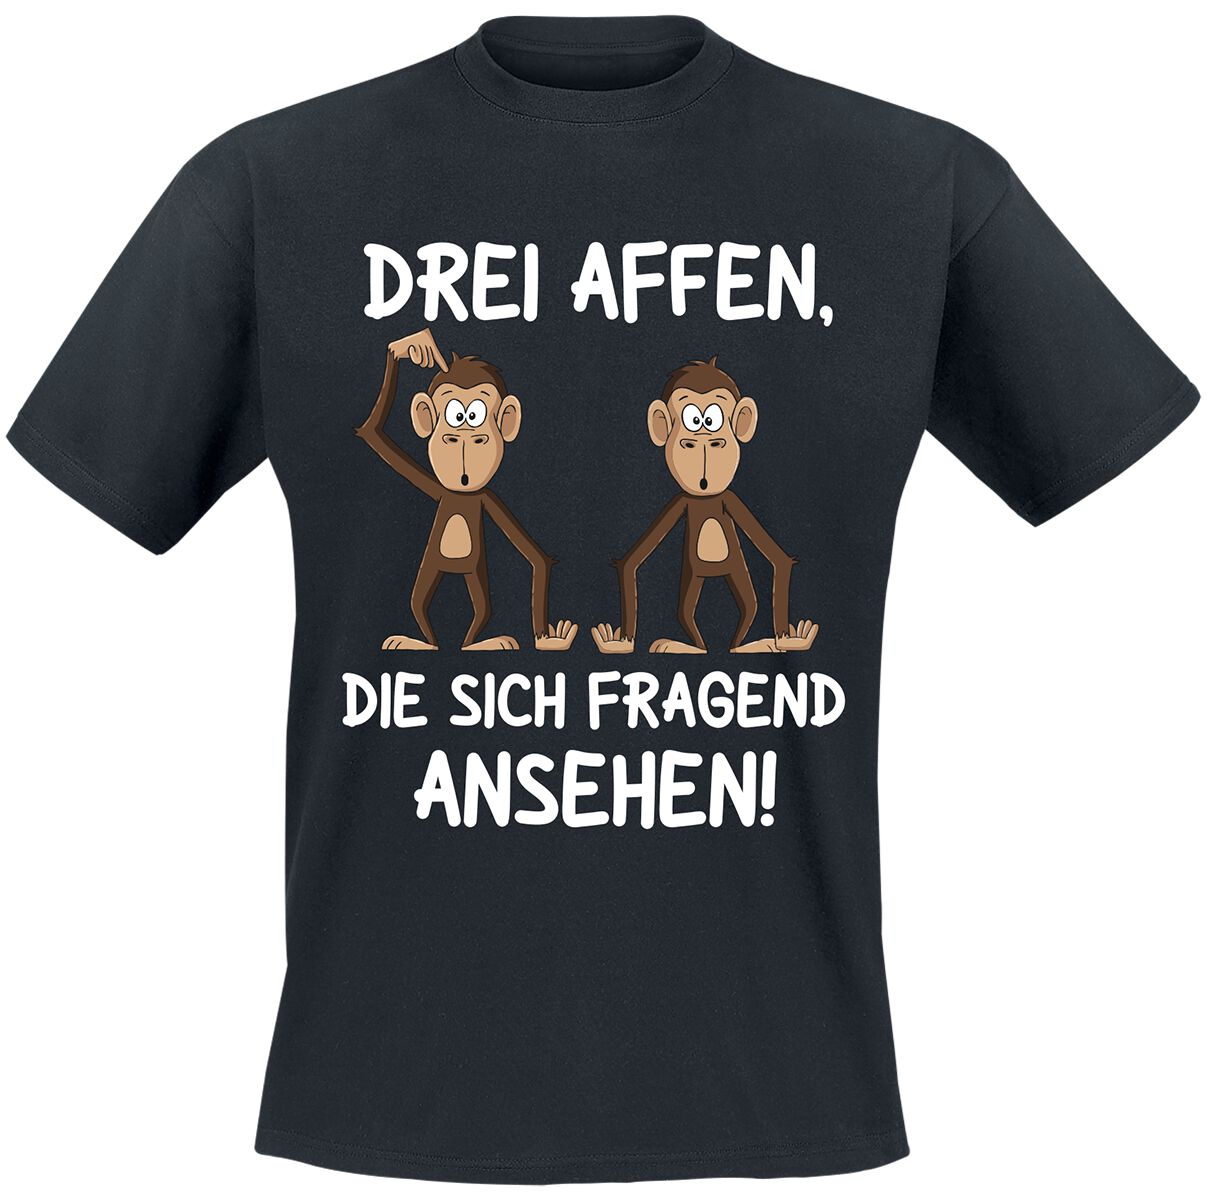 Tierisch T-Shirt - Drei Affen, die sich fragend ansehen! - M bis 4XL - für Männer - Größe XL - schwarz